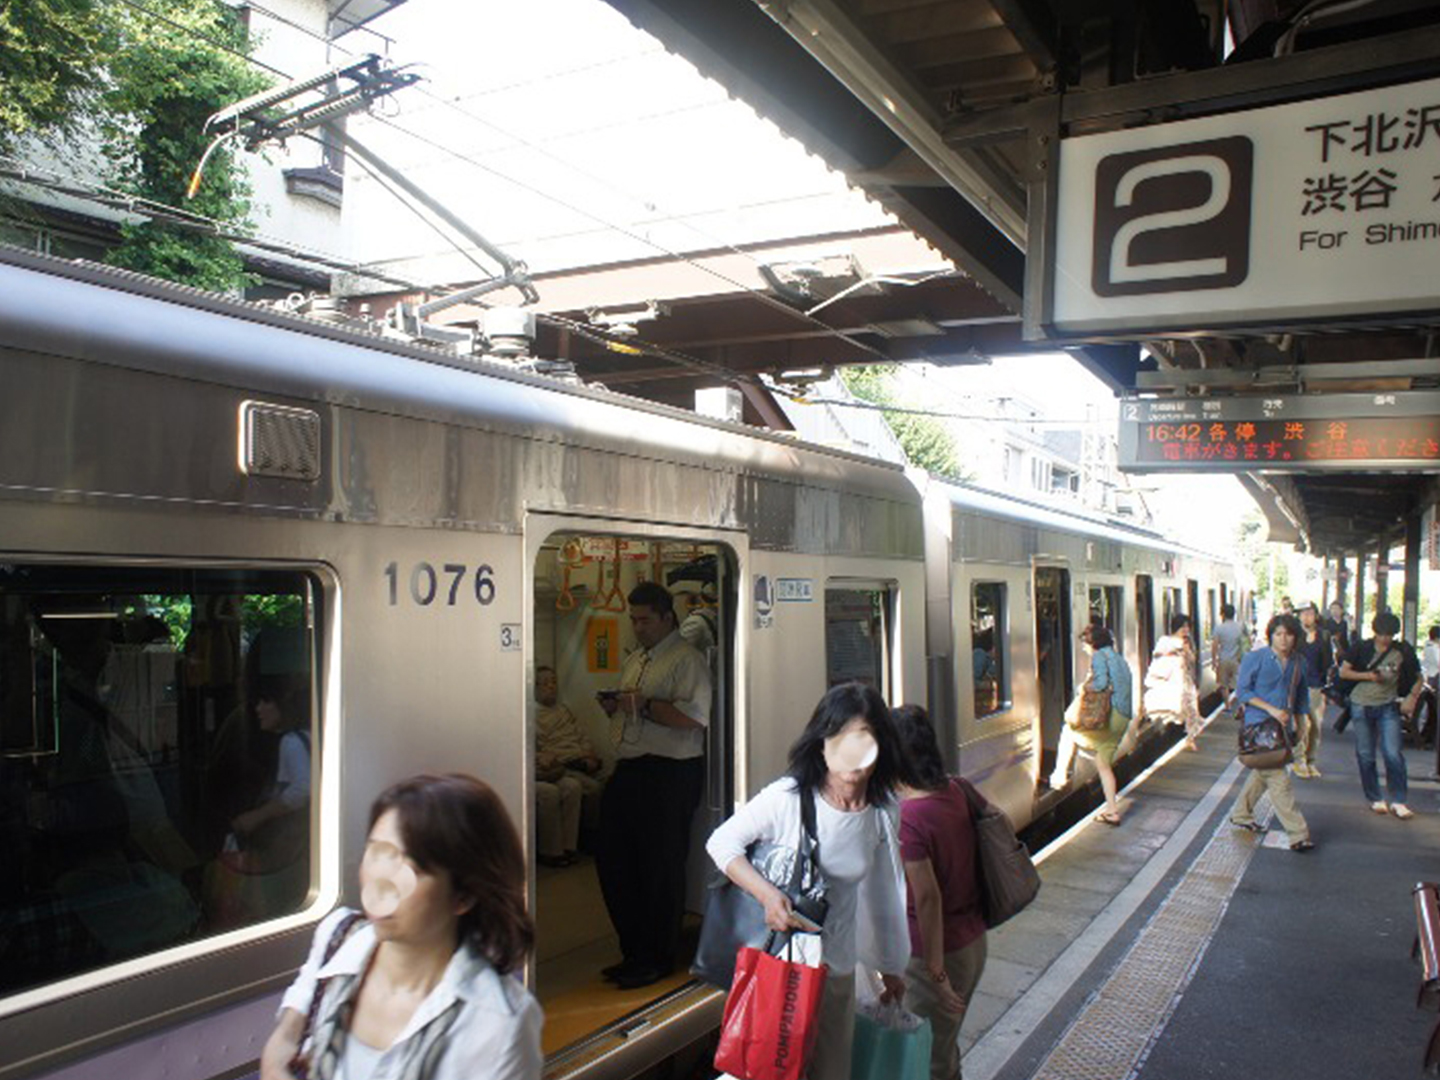 京王井の頭線の東松原駅。渋谷、下北沢、吉祥寺を結ぶ学生に人気の路線